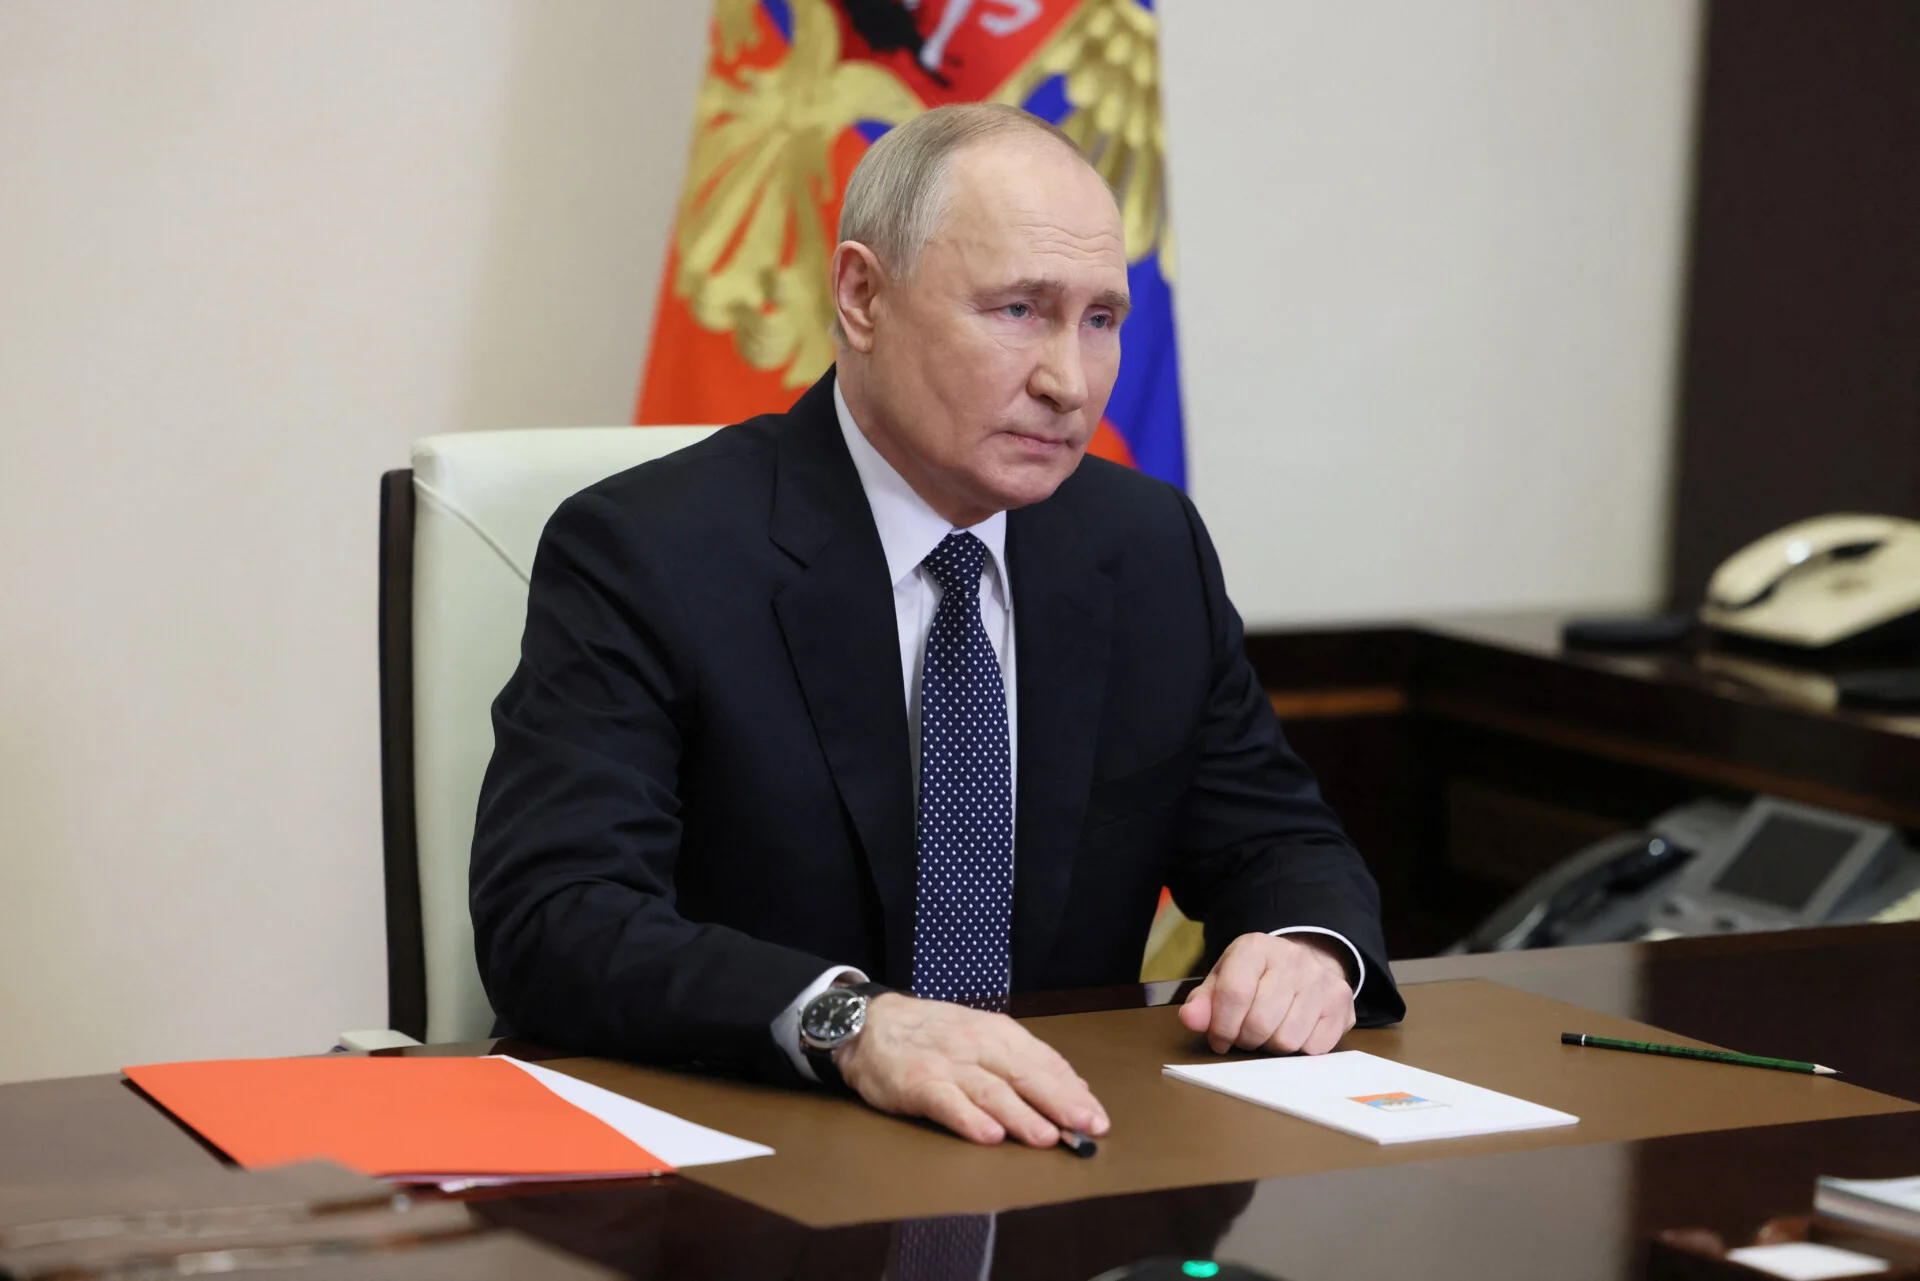 Πούτιν για μακελειό στη Μόσχα: Βάρβαρη πράξη τρομοκρατίας – Οι υπεύθυνοι θα τιμωρηθούν